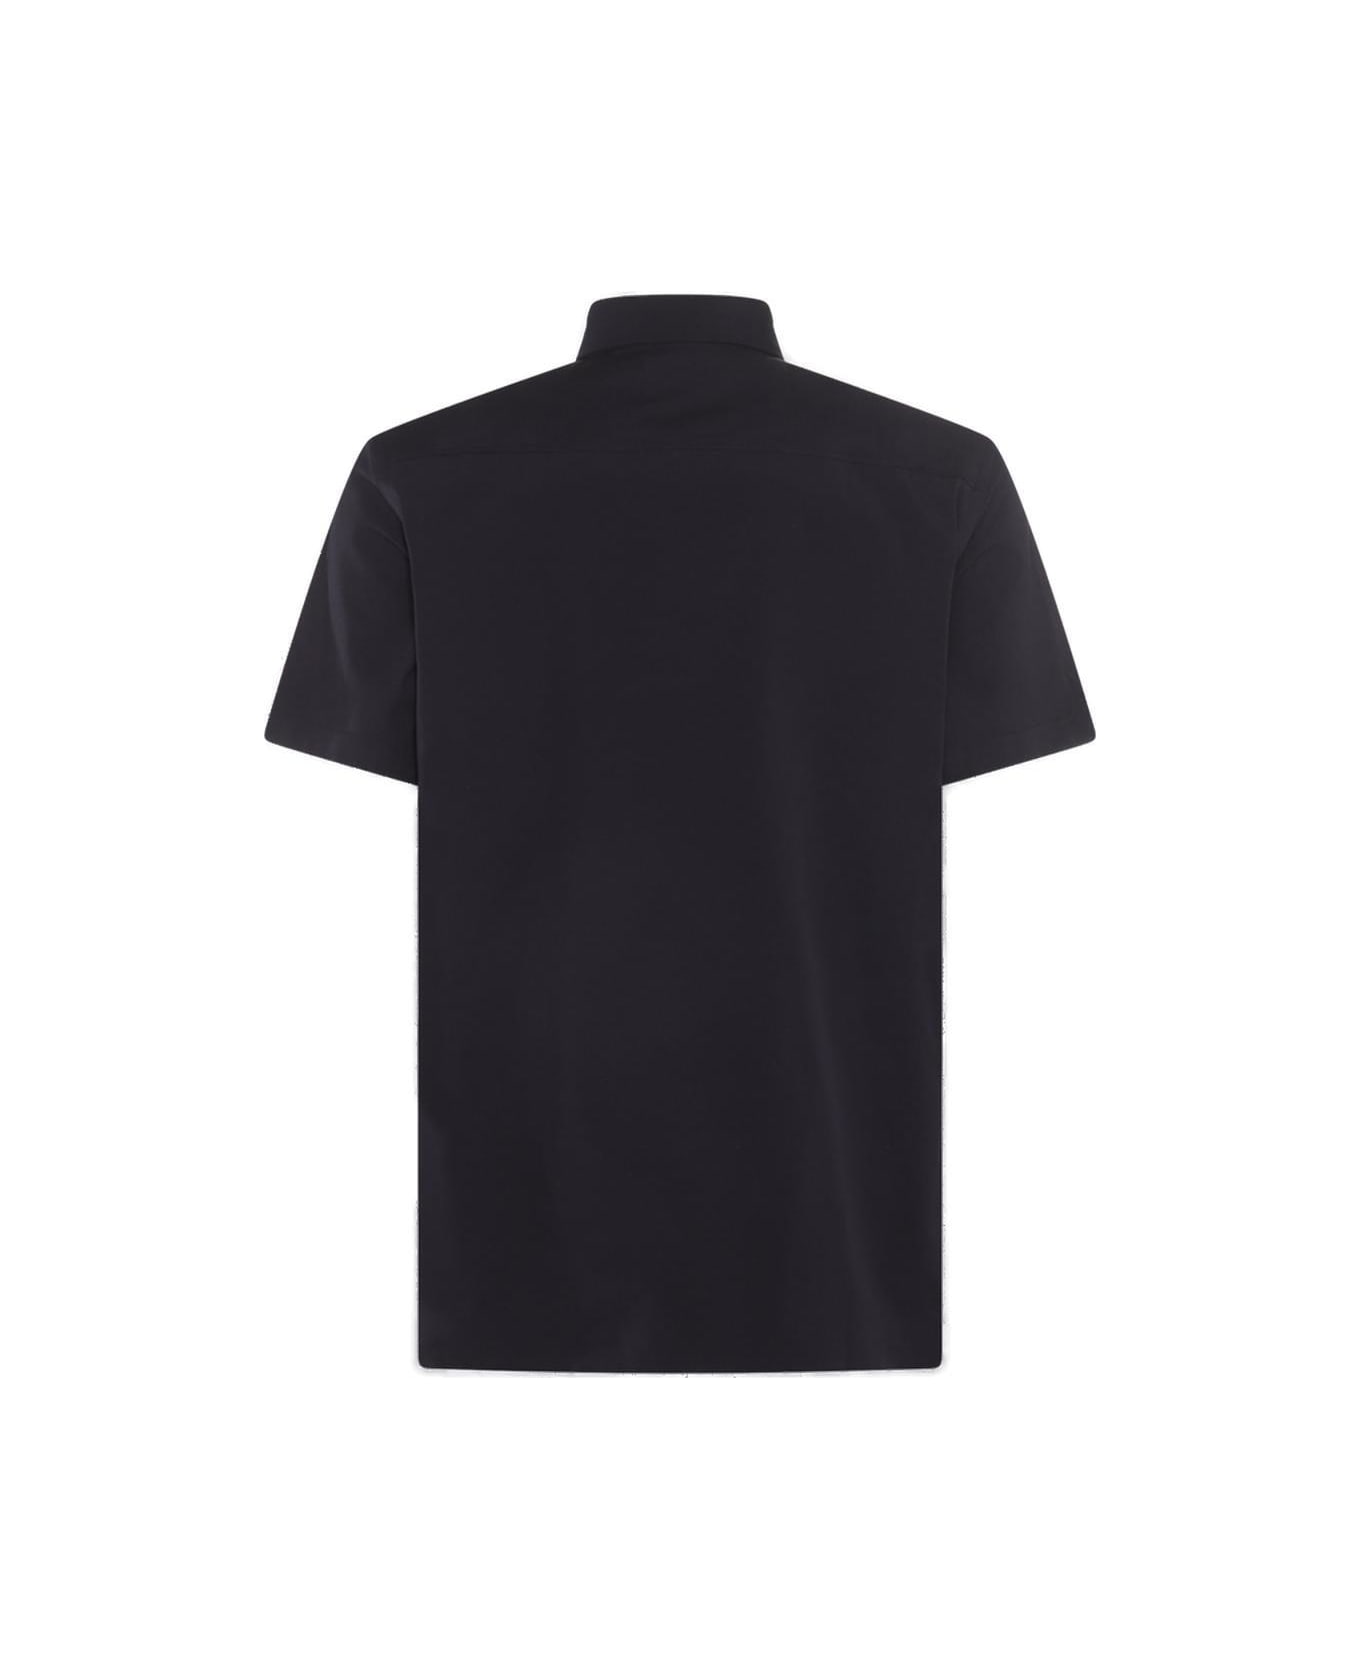 Burberry Short Sleeved Buttoned Shirt - A1222